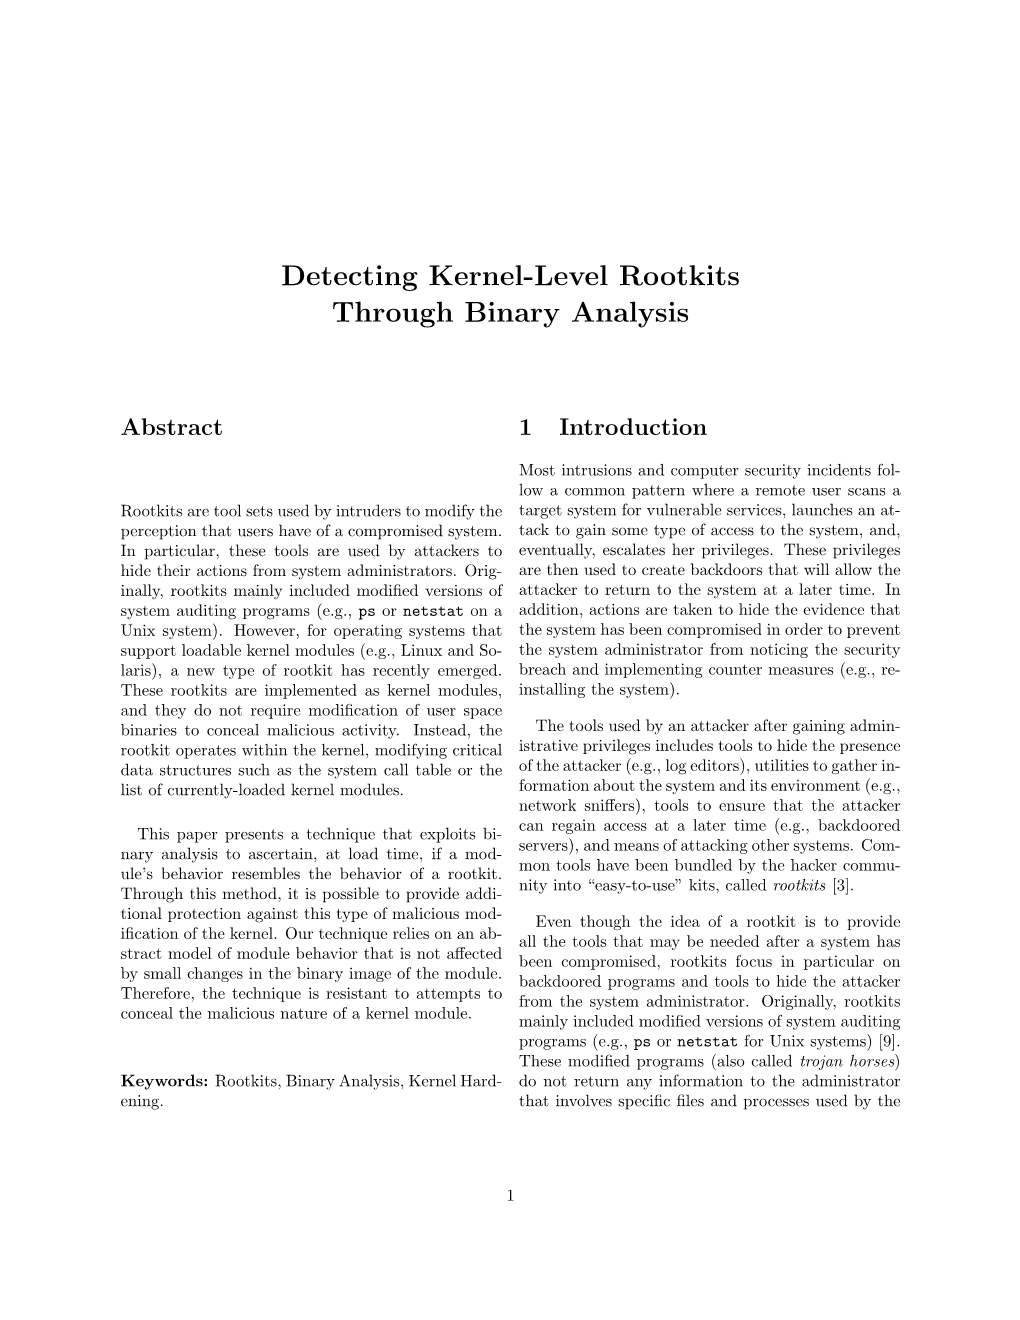 Detecting Kernel-Level Rootkits Through Binary Analysis